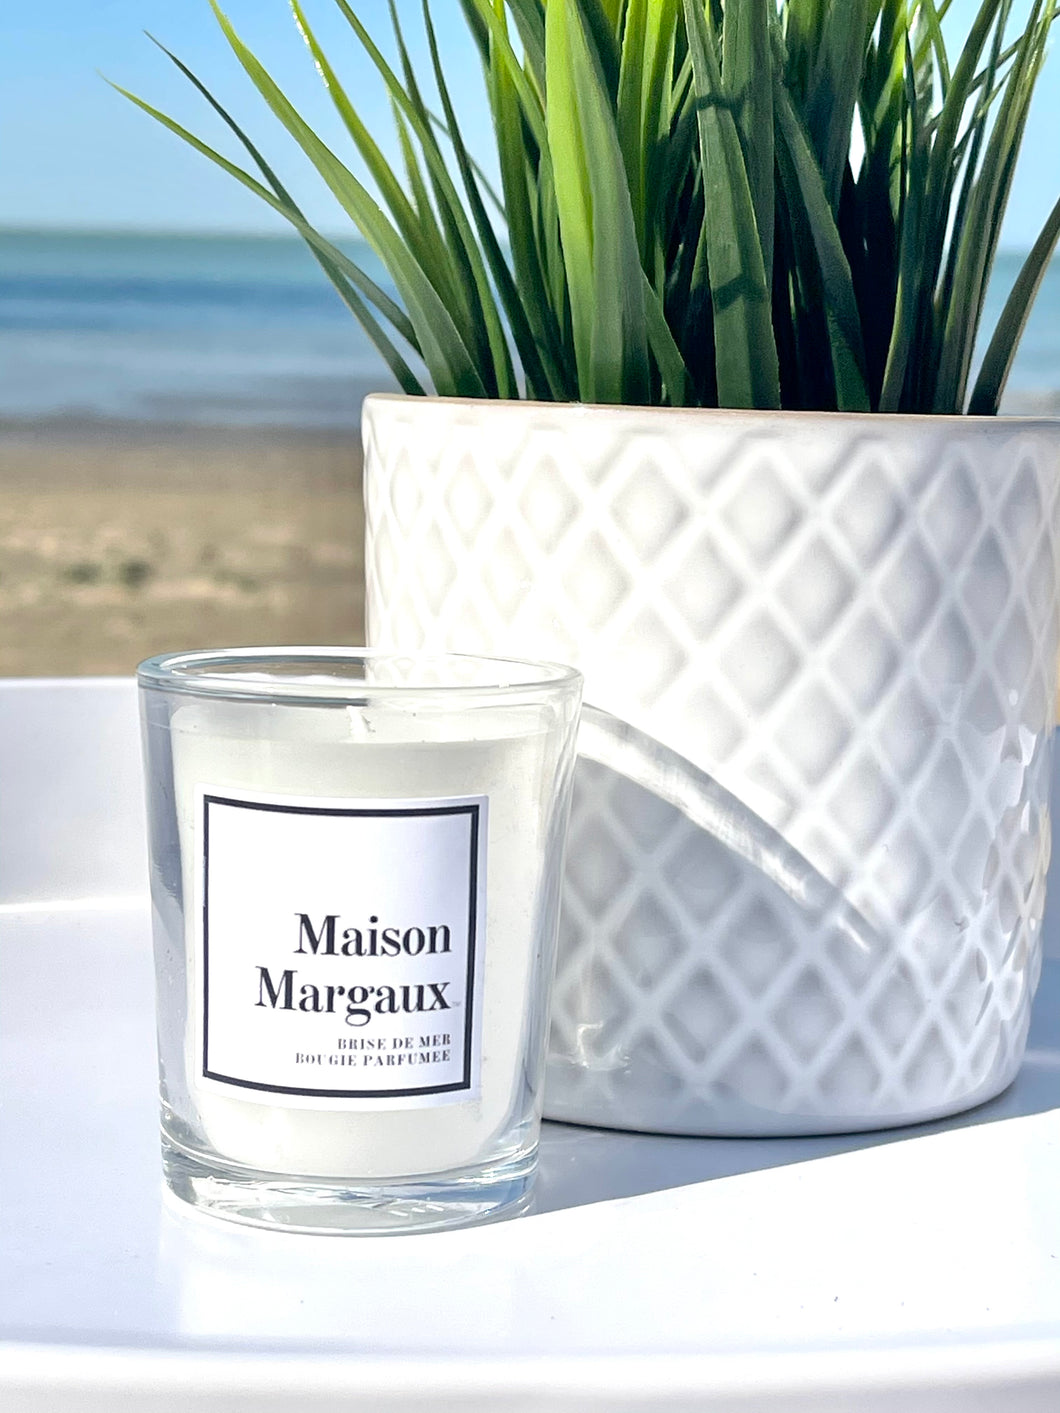 Maison Margaux Brise de Mer | Sea Breeze | 4-ounce Scented Candle